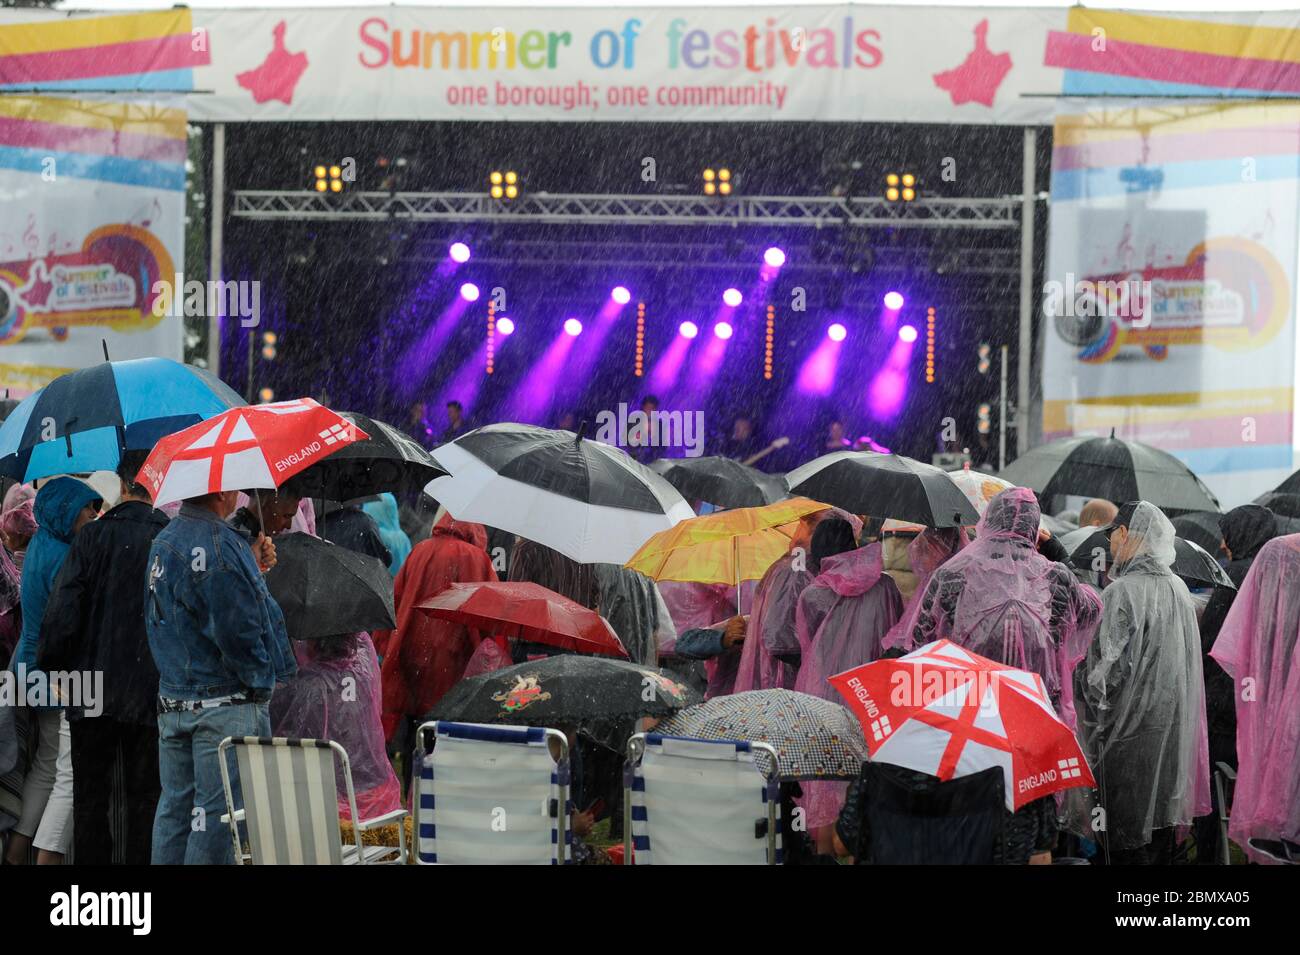 A summer festival in Dagenham celebrating Elvis. London. UK Stock Photo